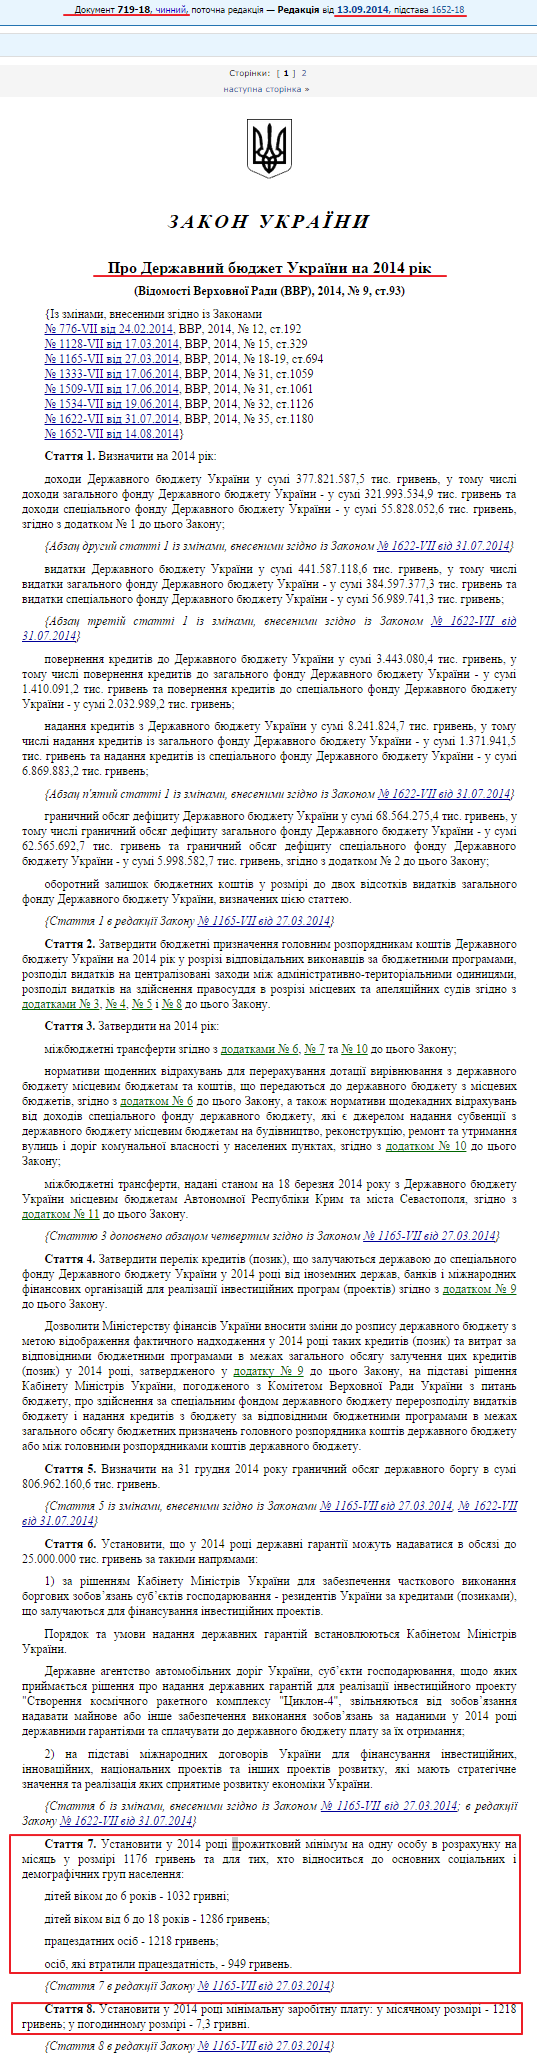 http://zakon3.rada.gov.ua/laws/show/719-18